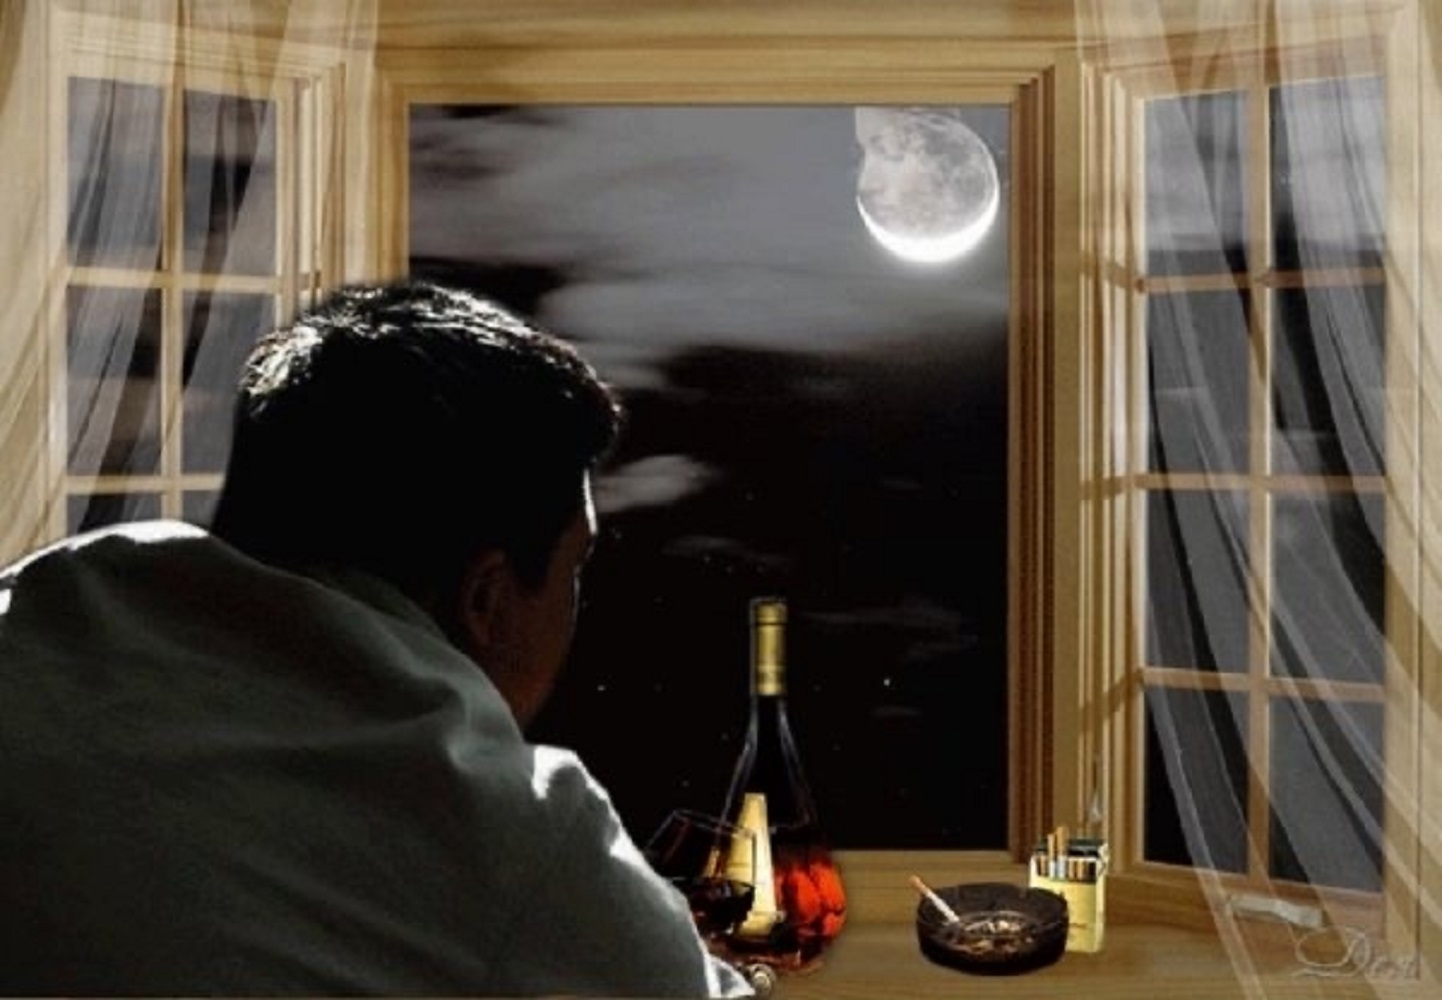 Посмотри в окно как там хорошо. Окно вечер. Мужчина грустит. Мужчина у окна. Человек за окном.